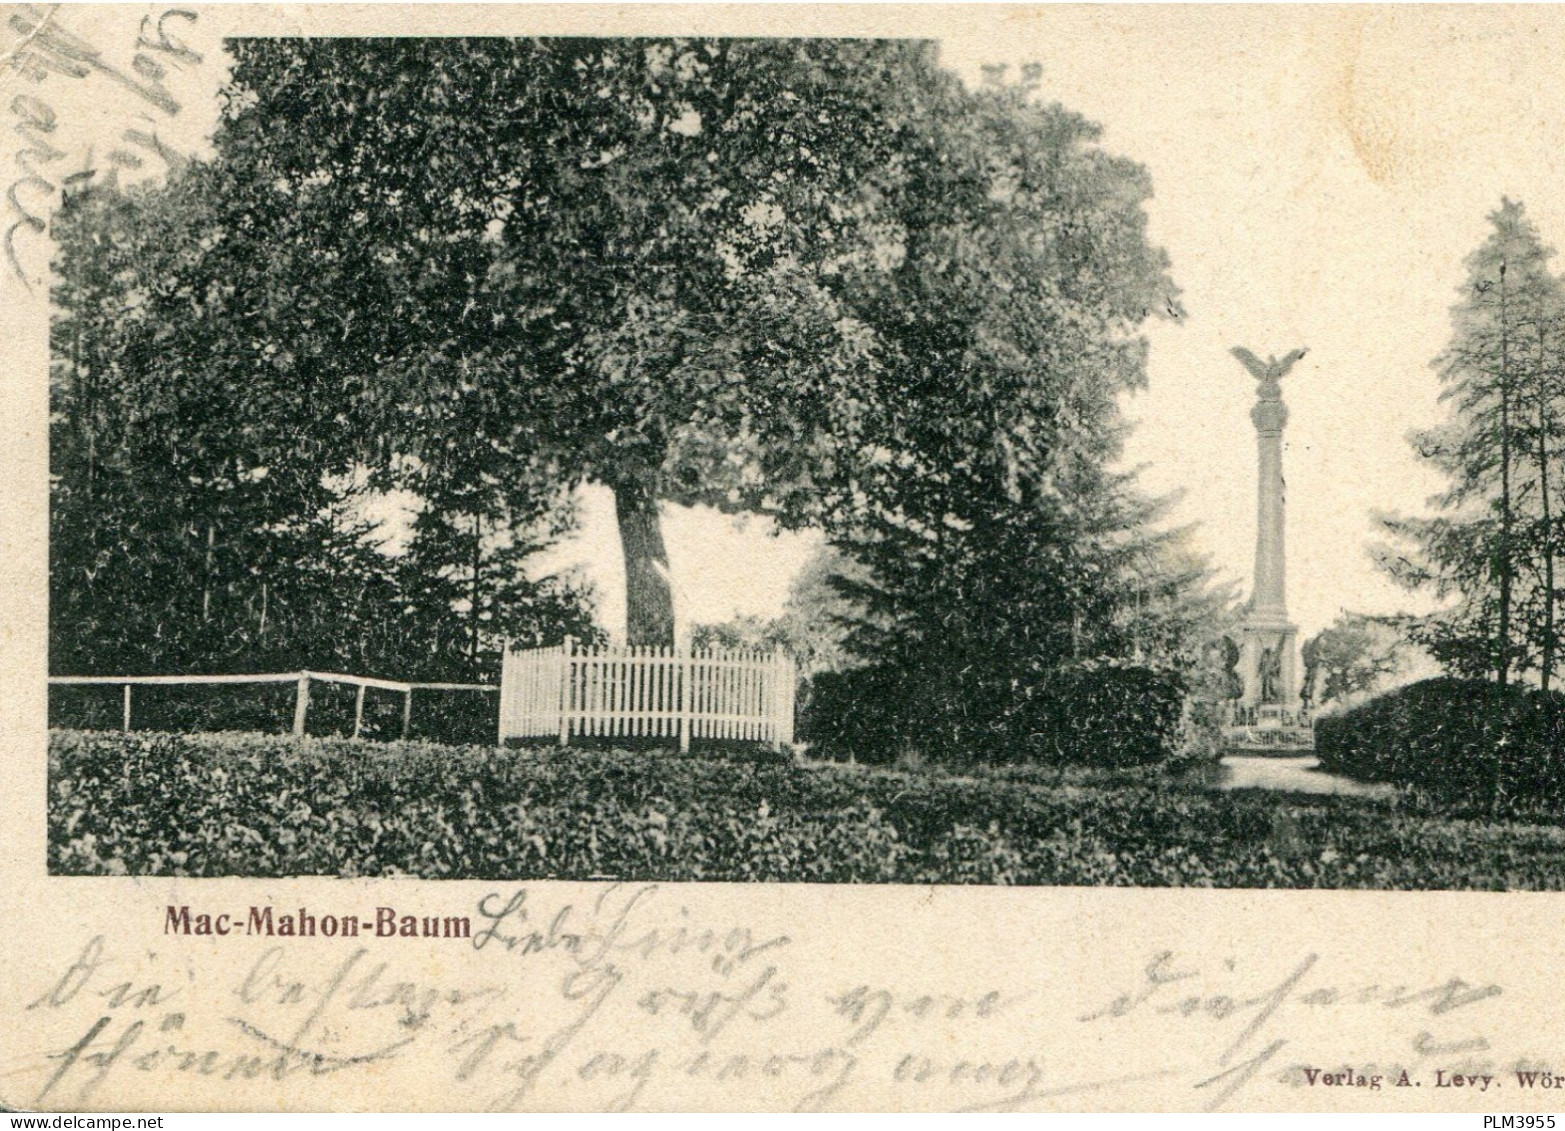 67 - WORTH - 2 Cartes Allemagne - L'arbre De Mac Mahon - La Broque